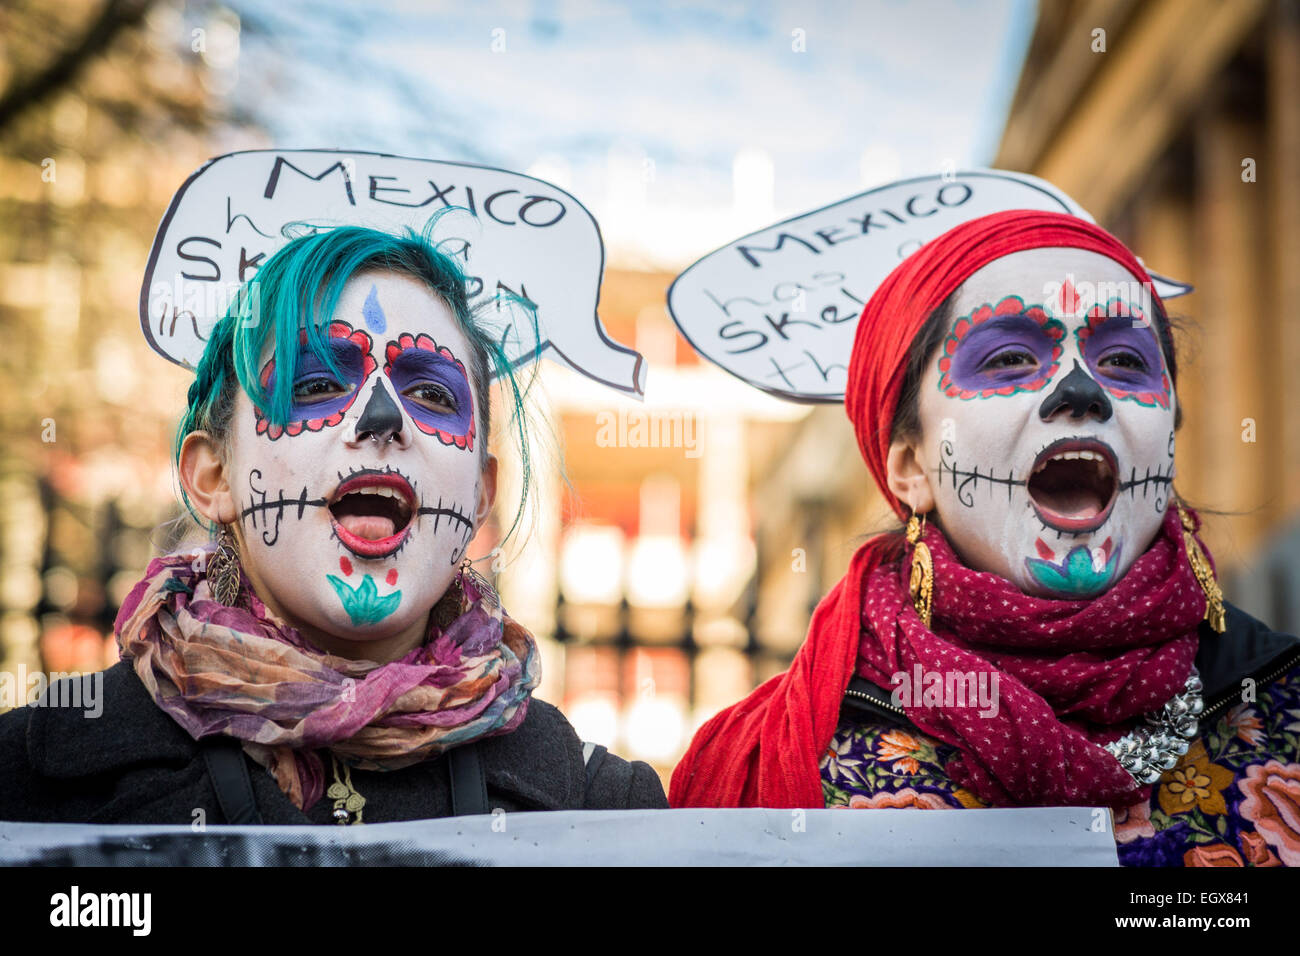 Londres, Royaume-Uni. 3 mars, 2015. Protestation contre le président du Mexique, M. Peña Nieto, U.K. visitez Crédit : Guy Josse/Alamy Live News Banque D'Images